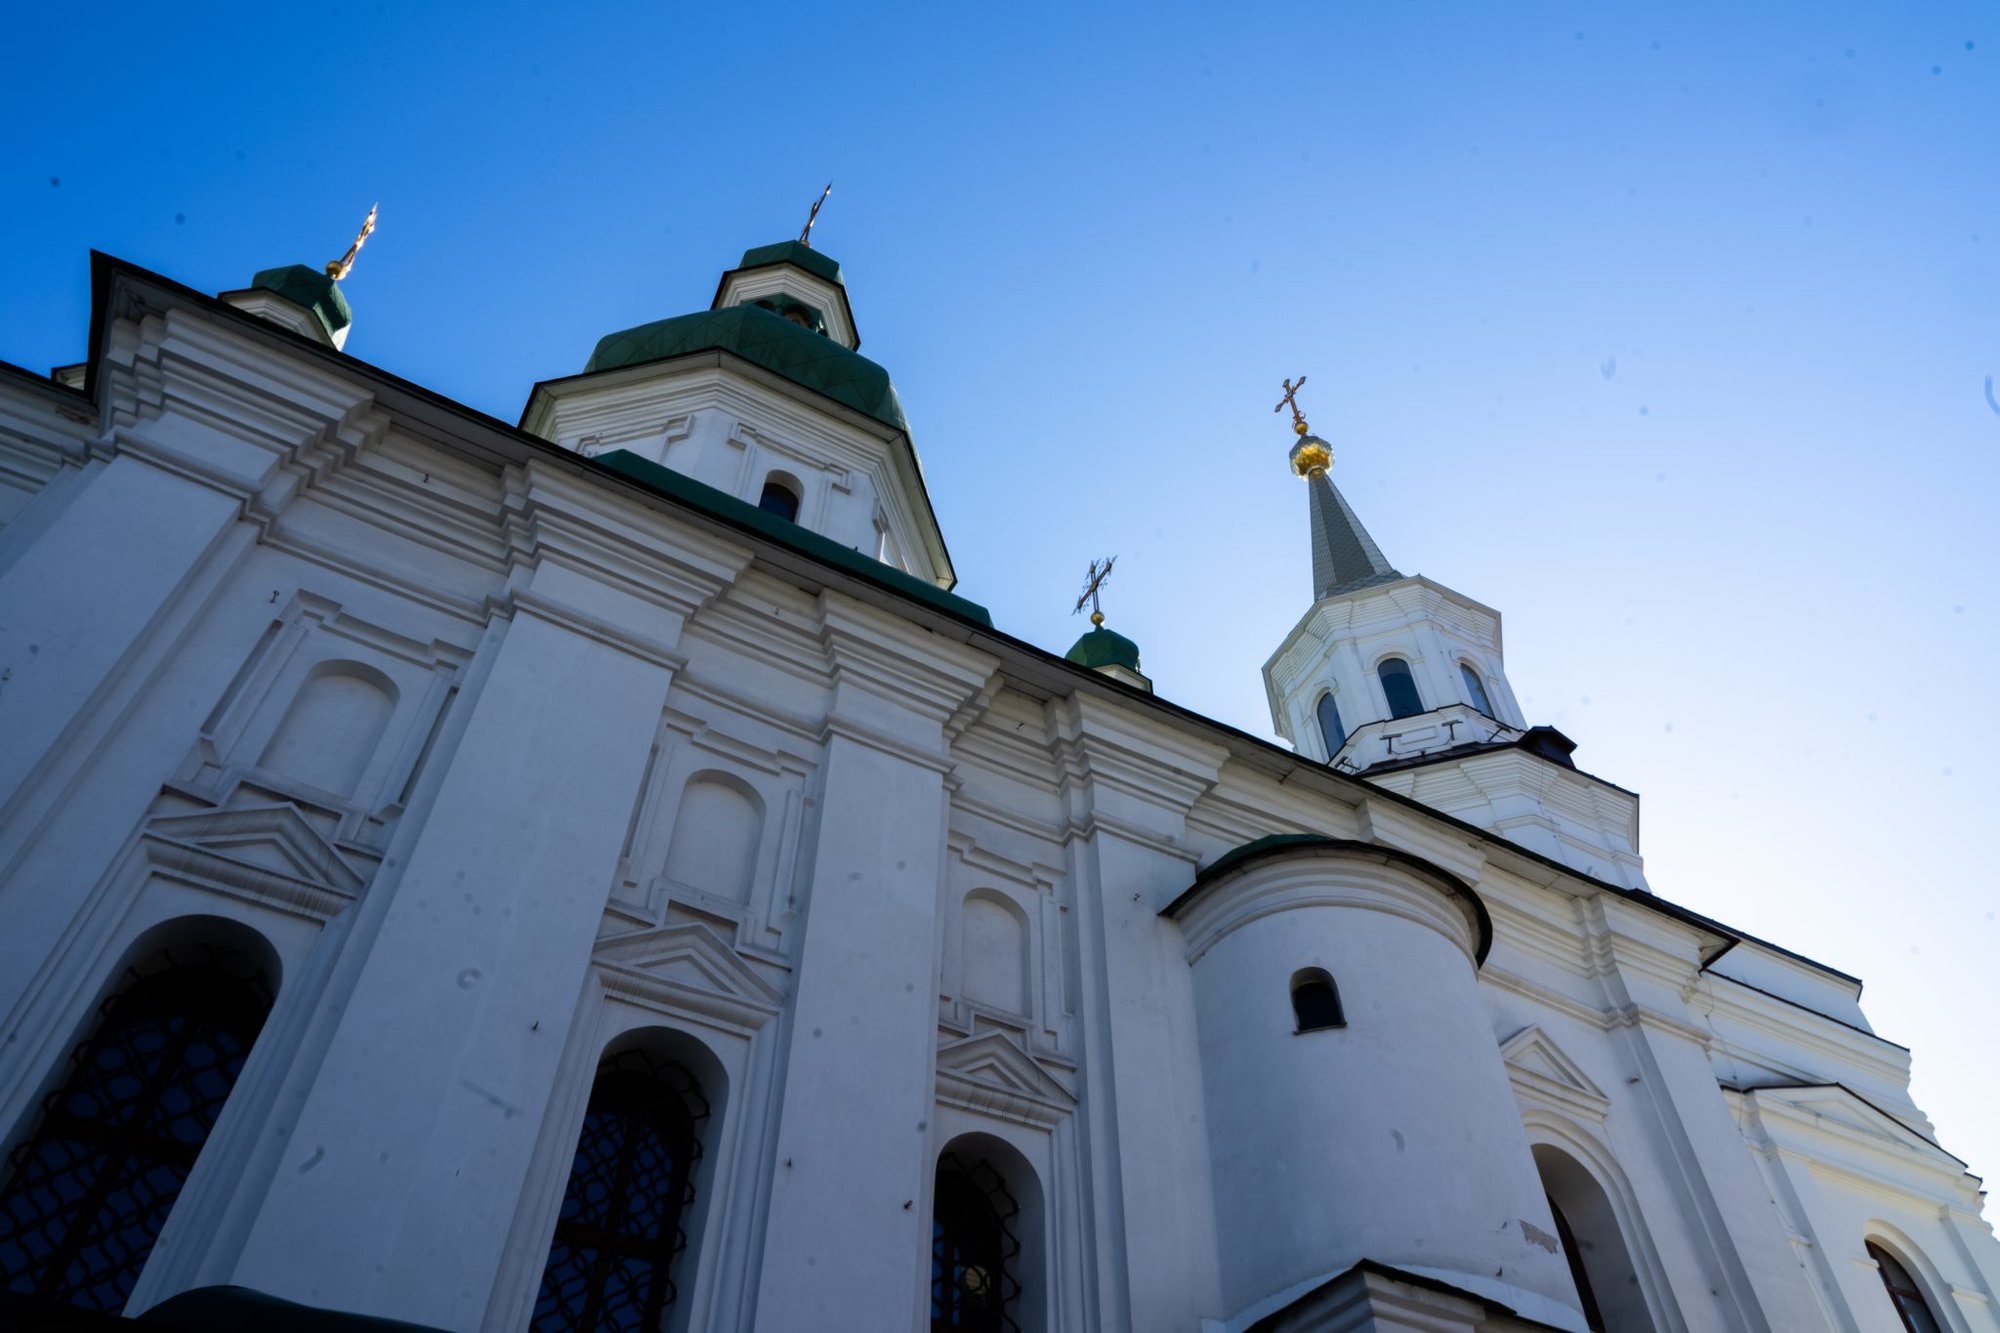 Kyiv St. Theodosius Monastery